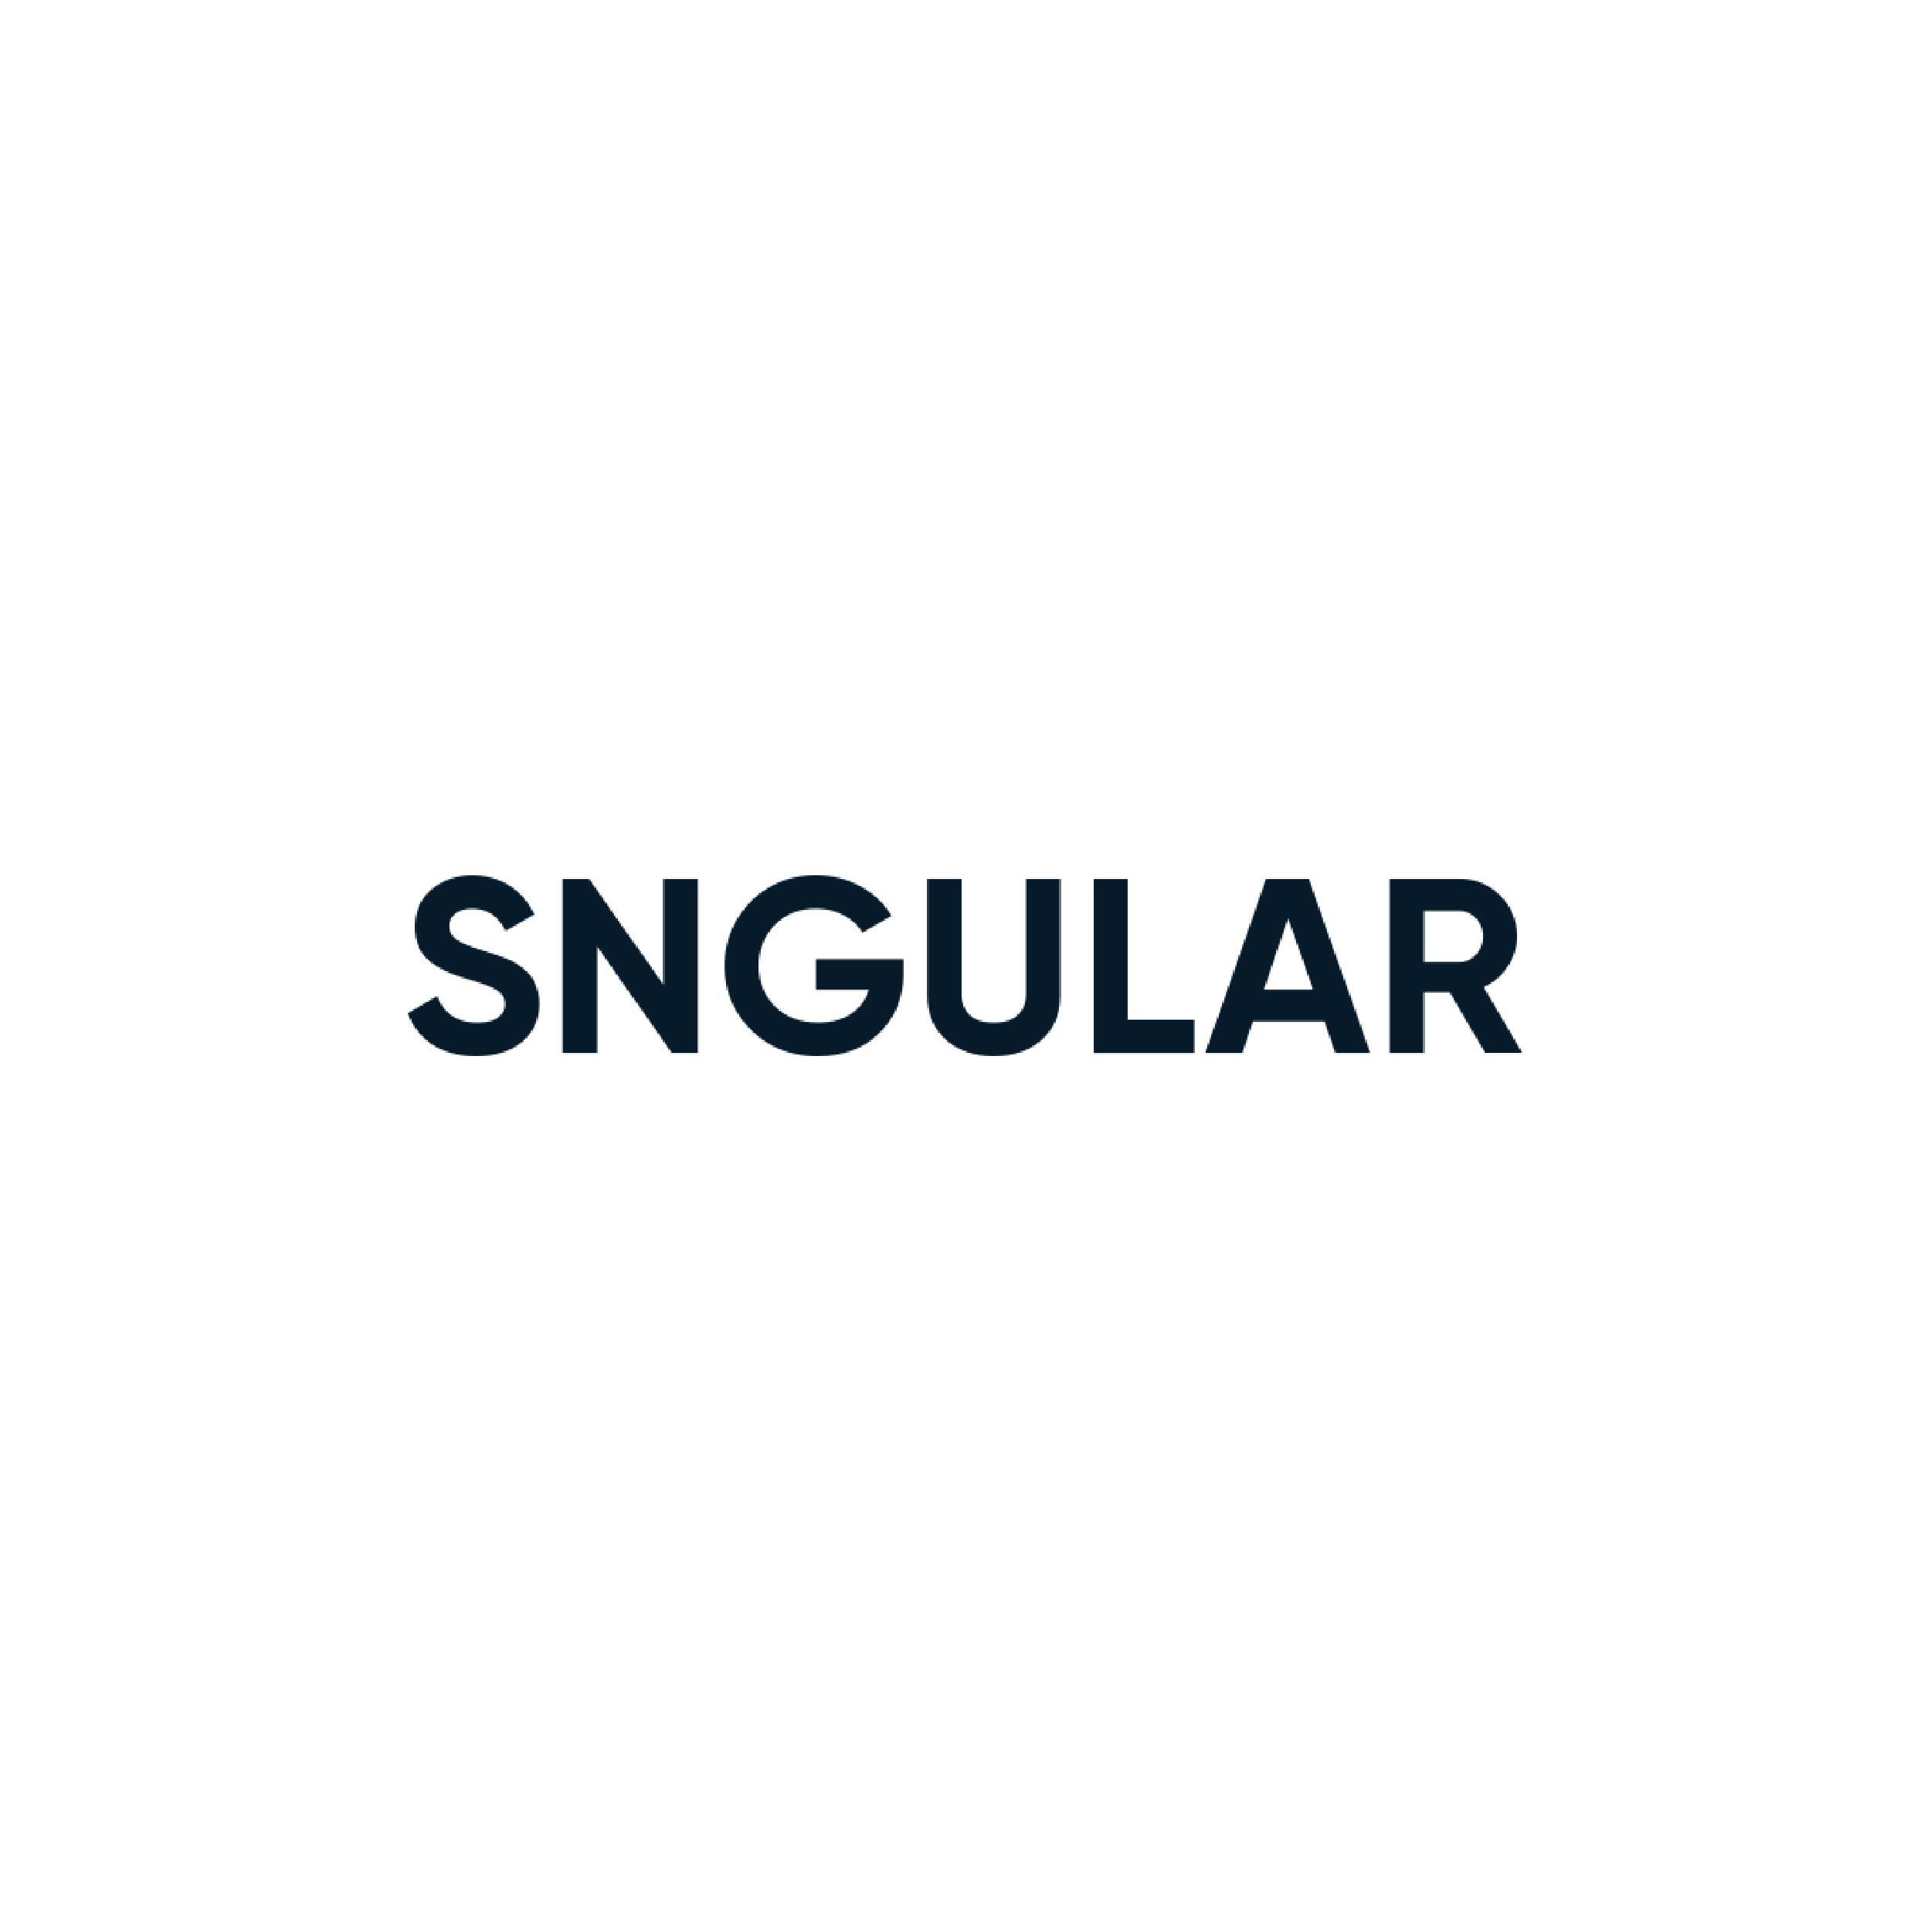 Sngular logo